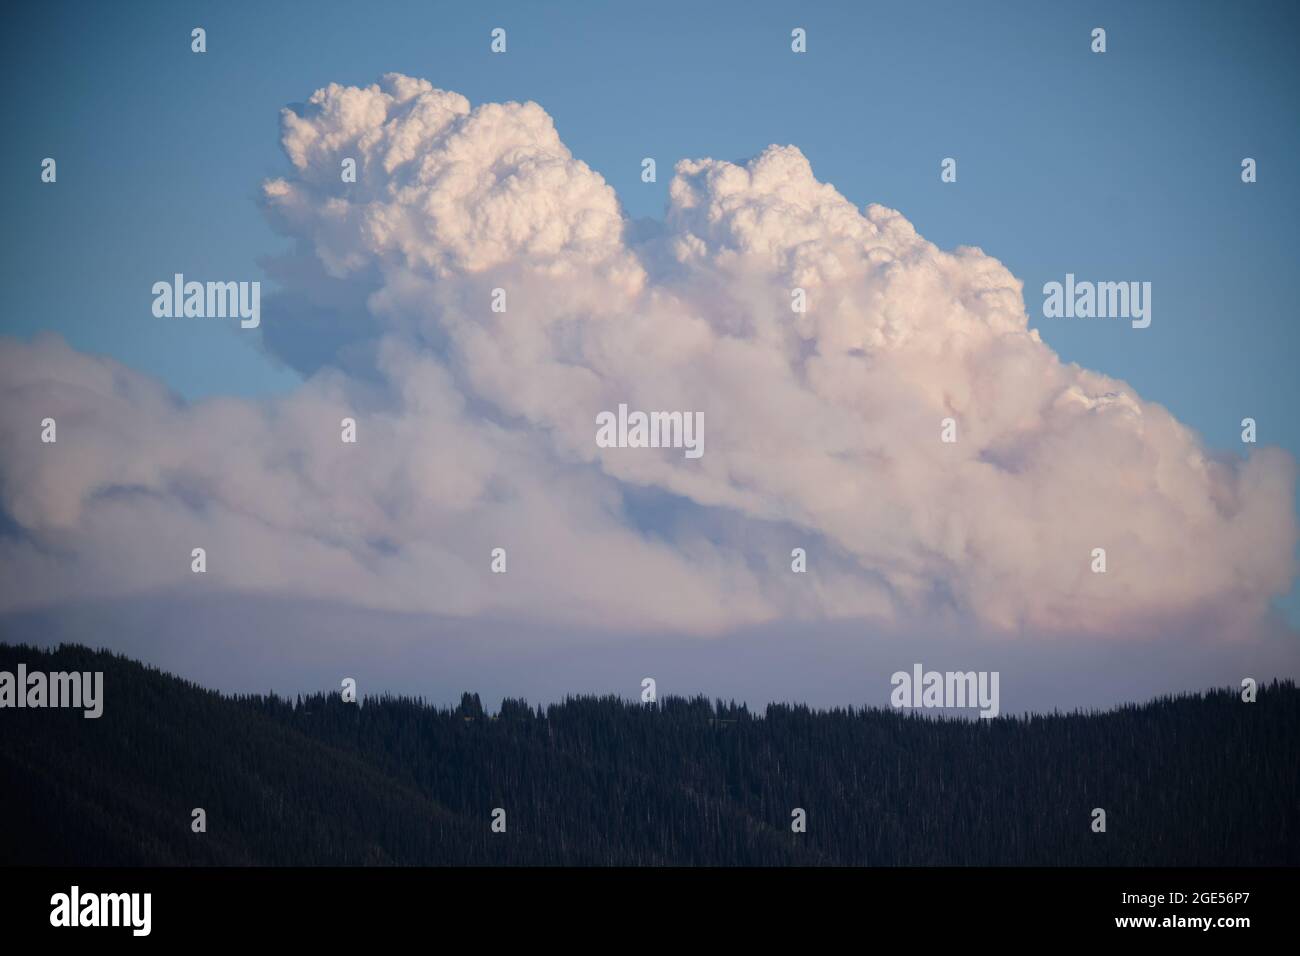 El humo y el aire caliente del creciente incendio forestal cerca de Manning Park, BC crea su propio sistema meteorológico con nubes cumulo-nimbus que se ven en desarrollo sobre el bosque Foto de stock